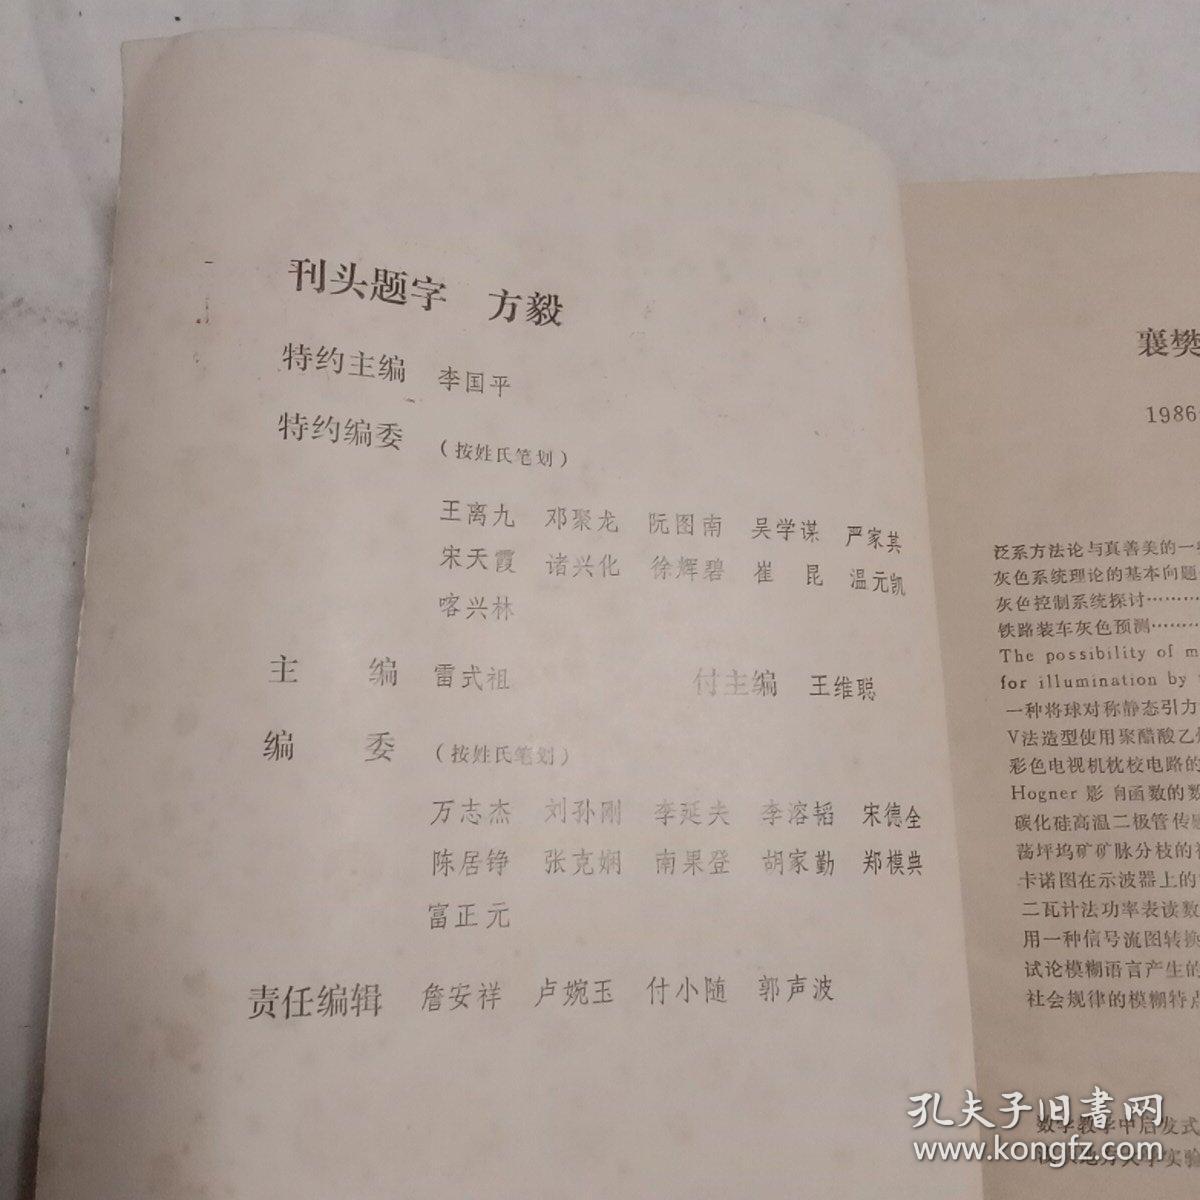 襄樊大学学报1986年第一期(总笫一期)